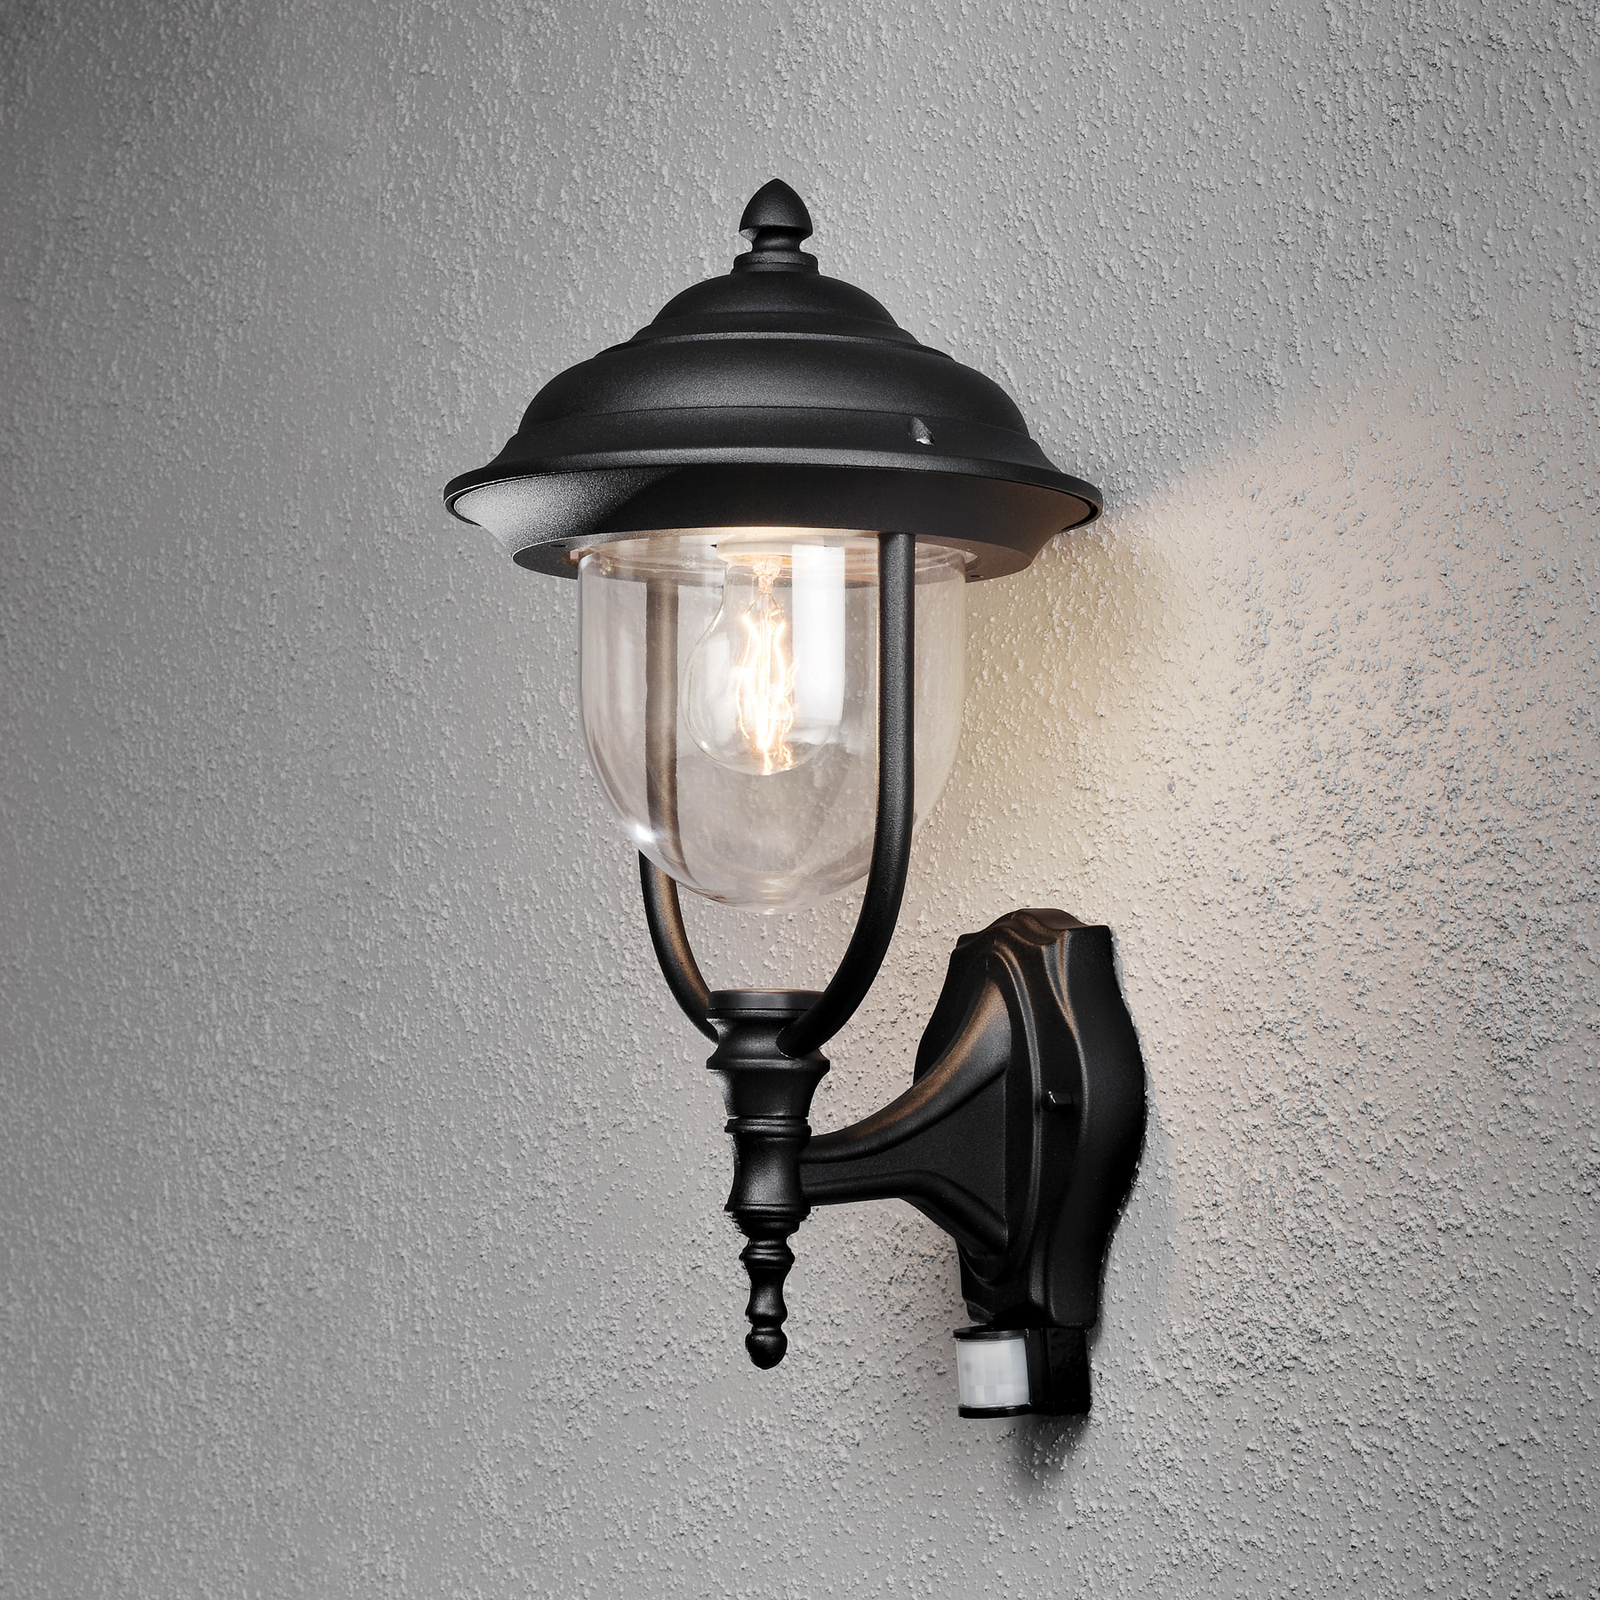 Udendørs væglampe Parma m. bevægelsessensor, sort